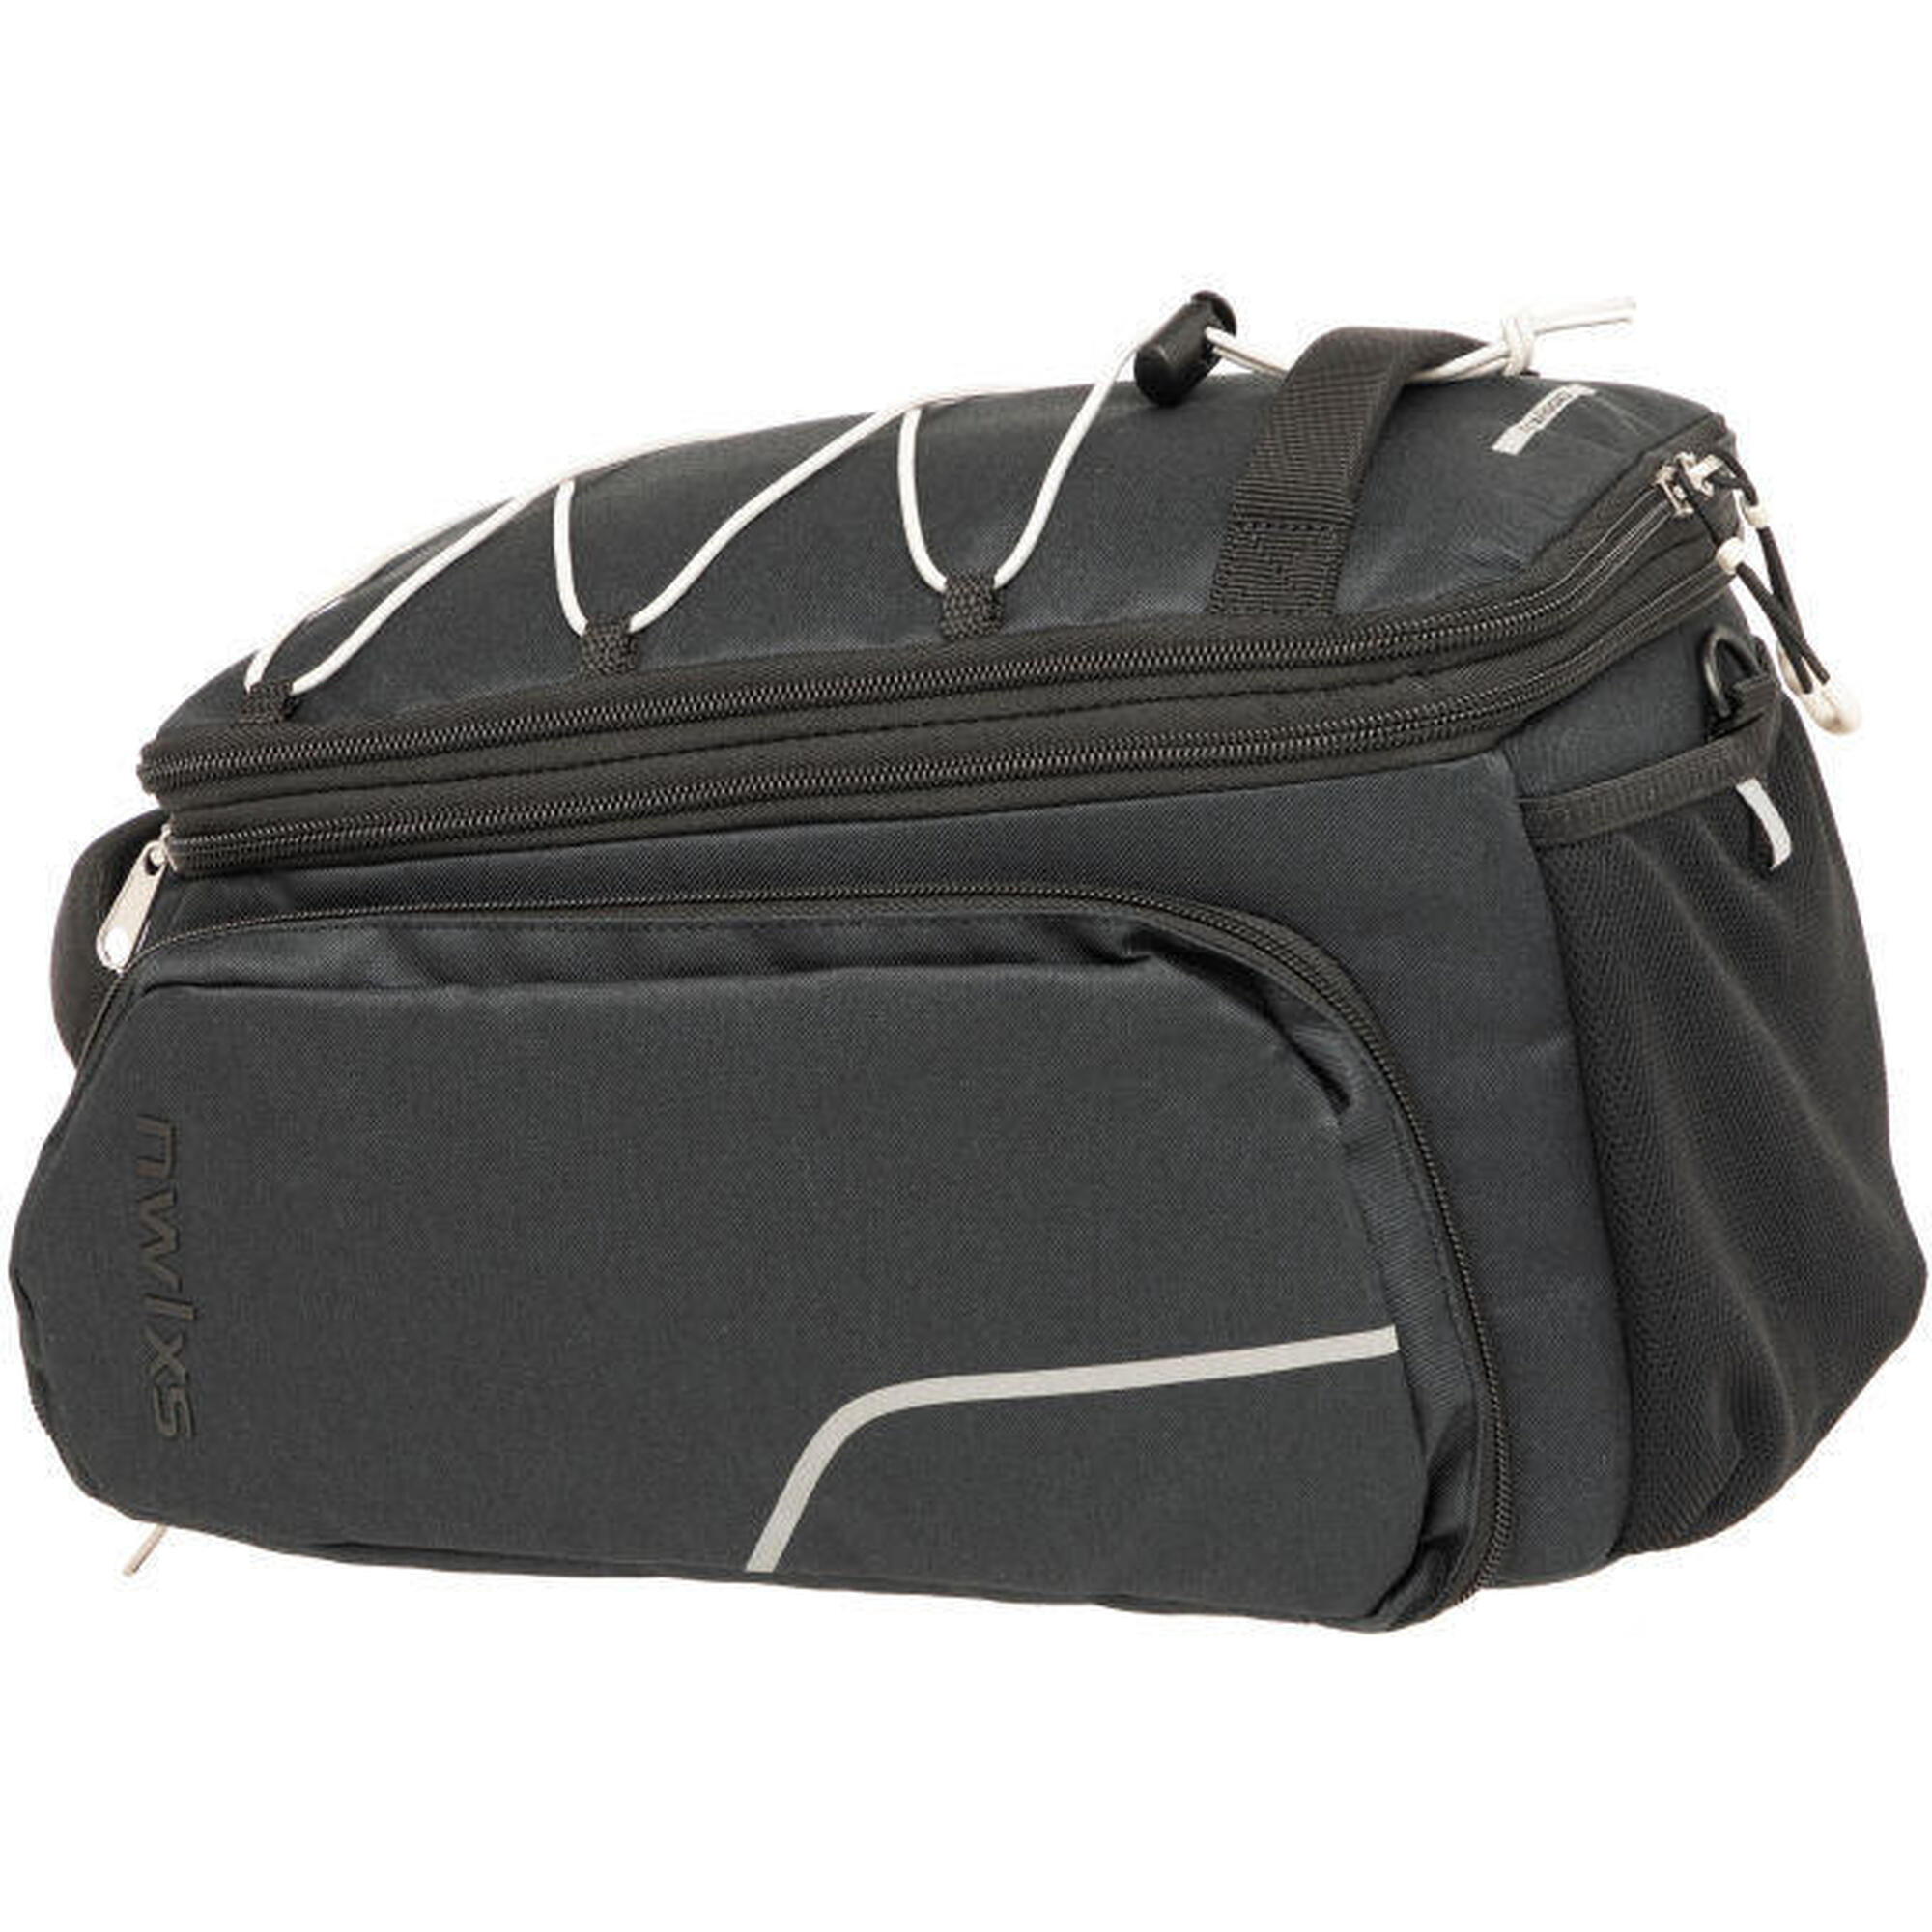 NEW LOOXS Gepäckträgertasche Trunkbag Sports Racktime 2.0